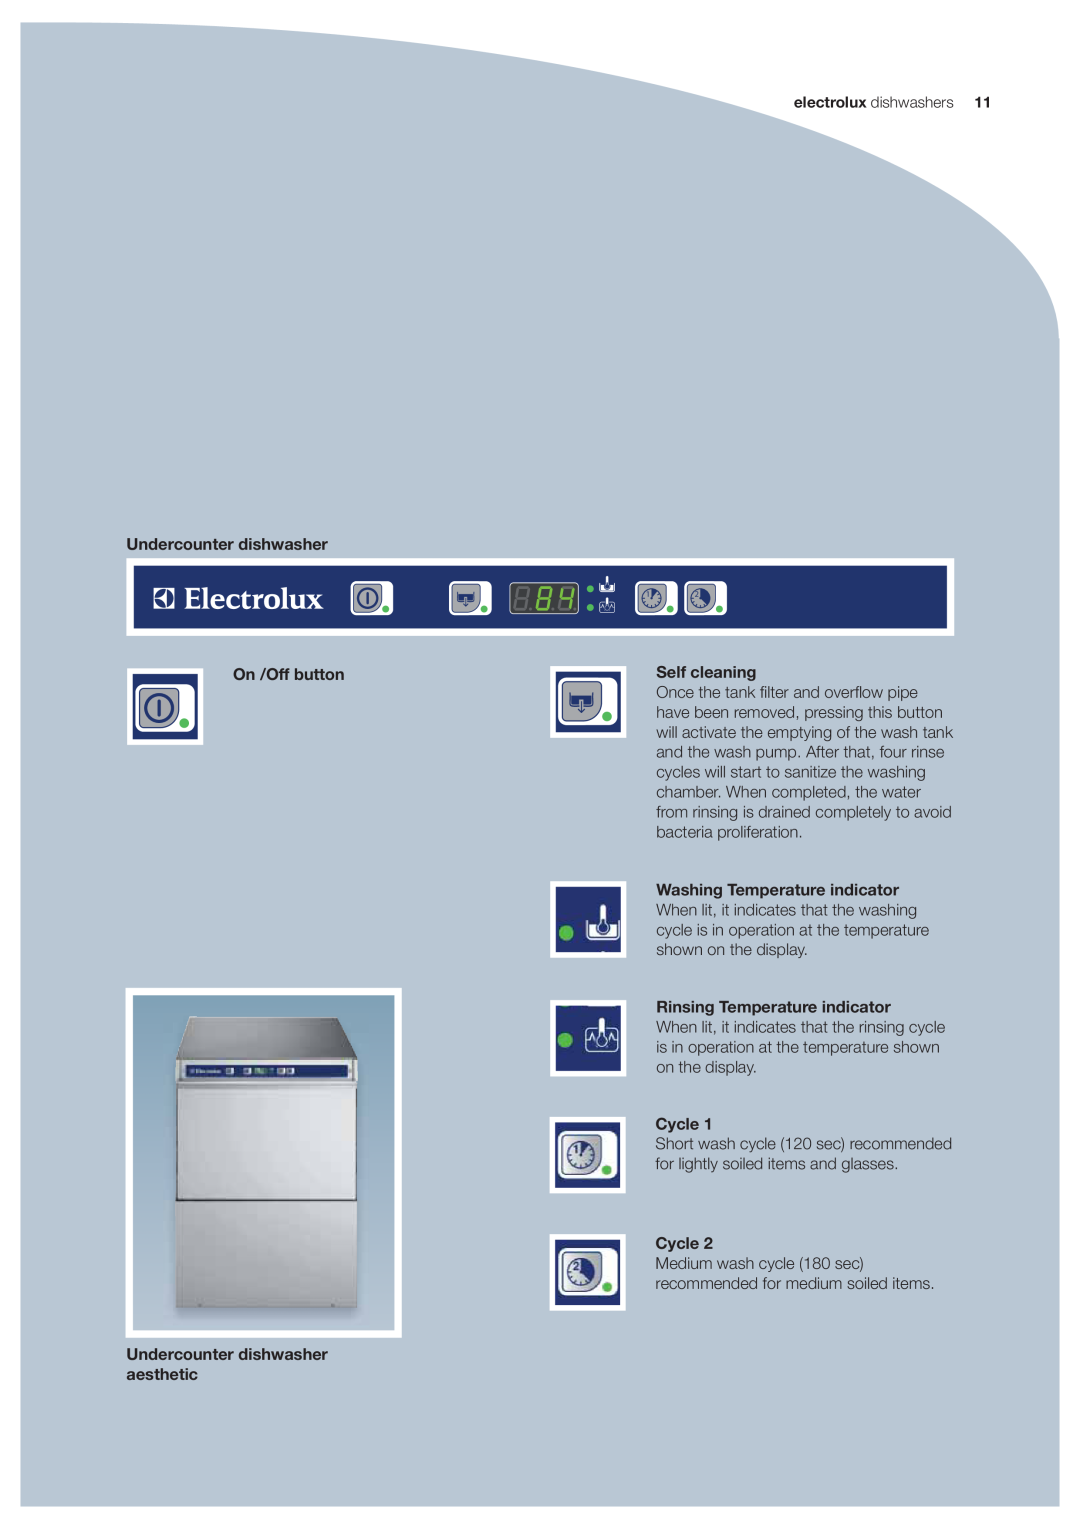 Electrolux EUC1, EUCAIWL, EUC3, EUCI electrolux dishwashers, Medium wash cycle 180 sec recommended for medium soiled items 